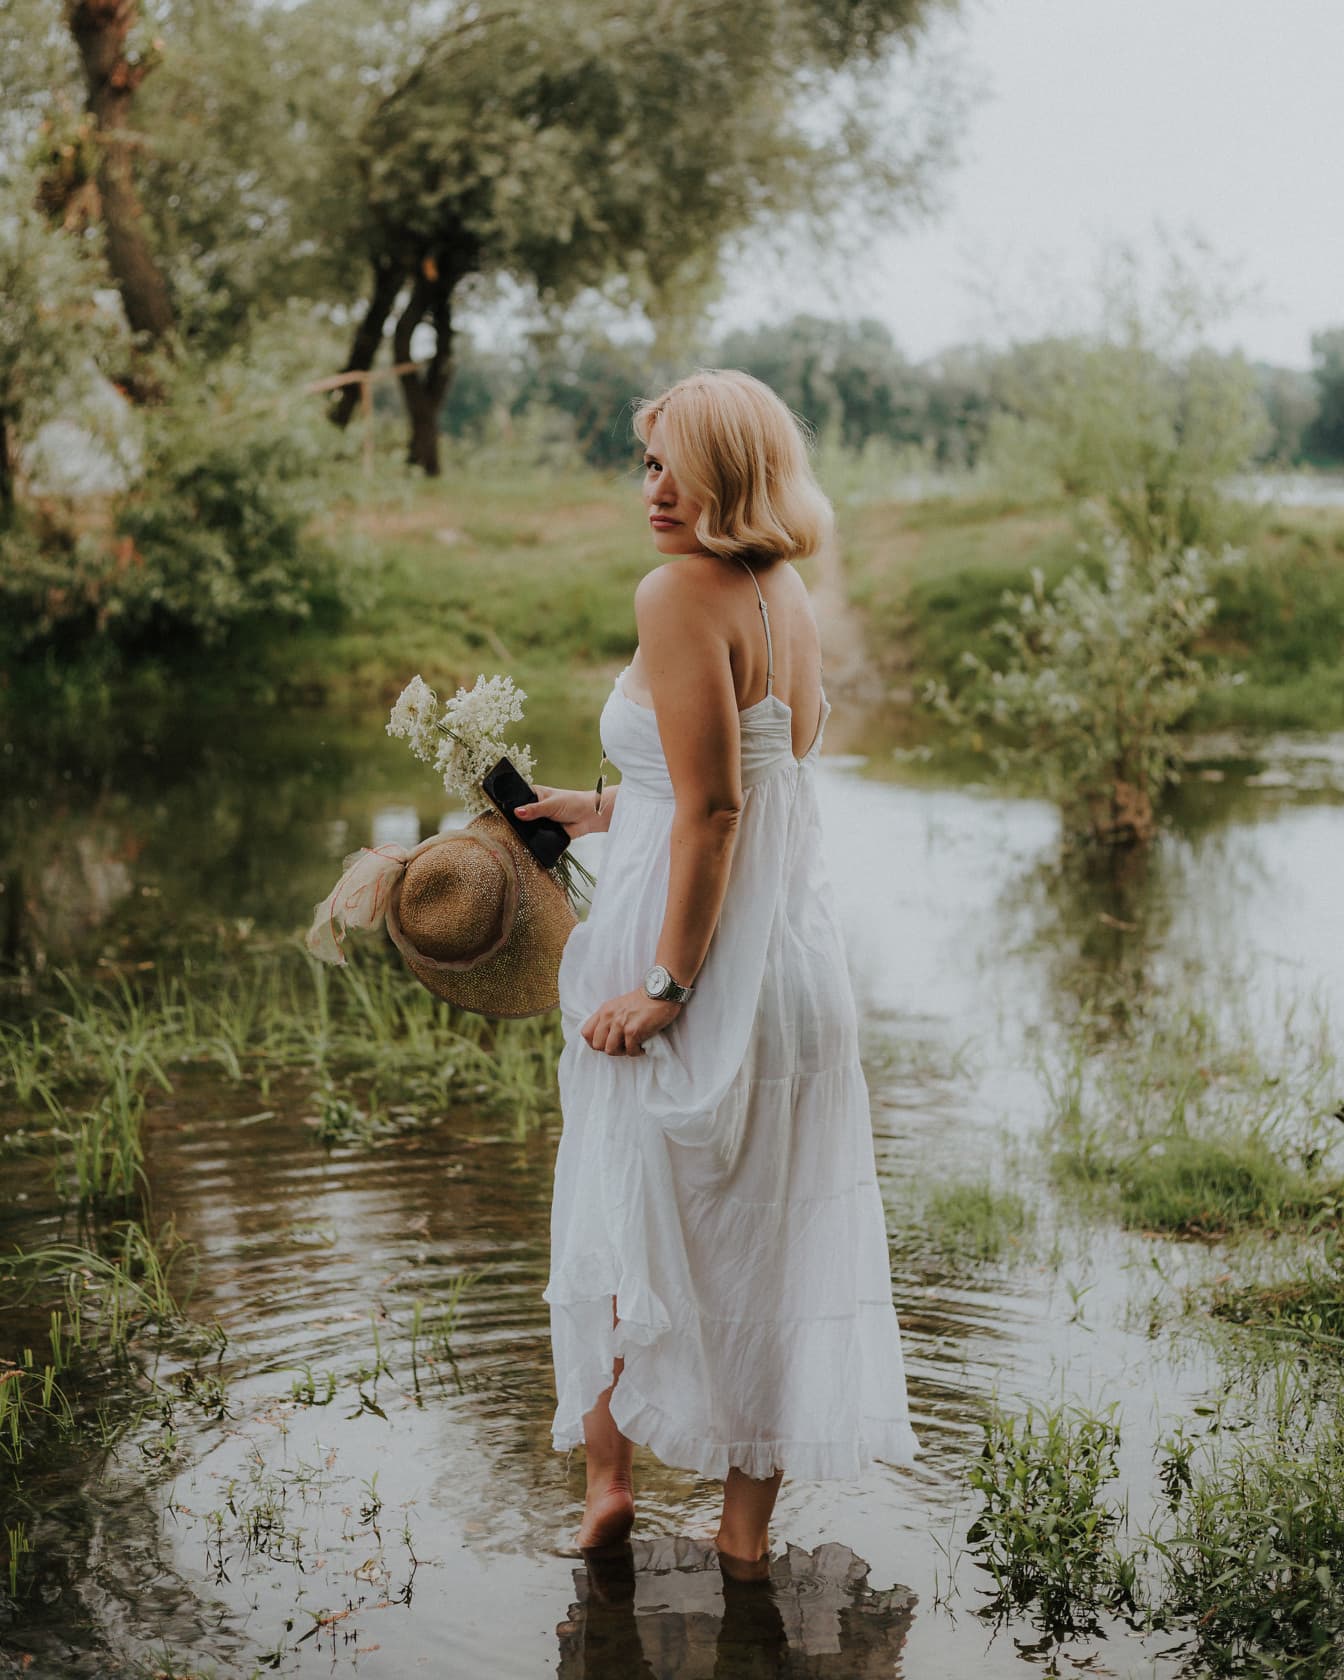 Cô gái tóc vàng chân trần lộng lẫy trong chiếc váy trắng đứng dưới hồ